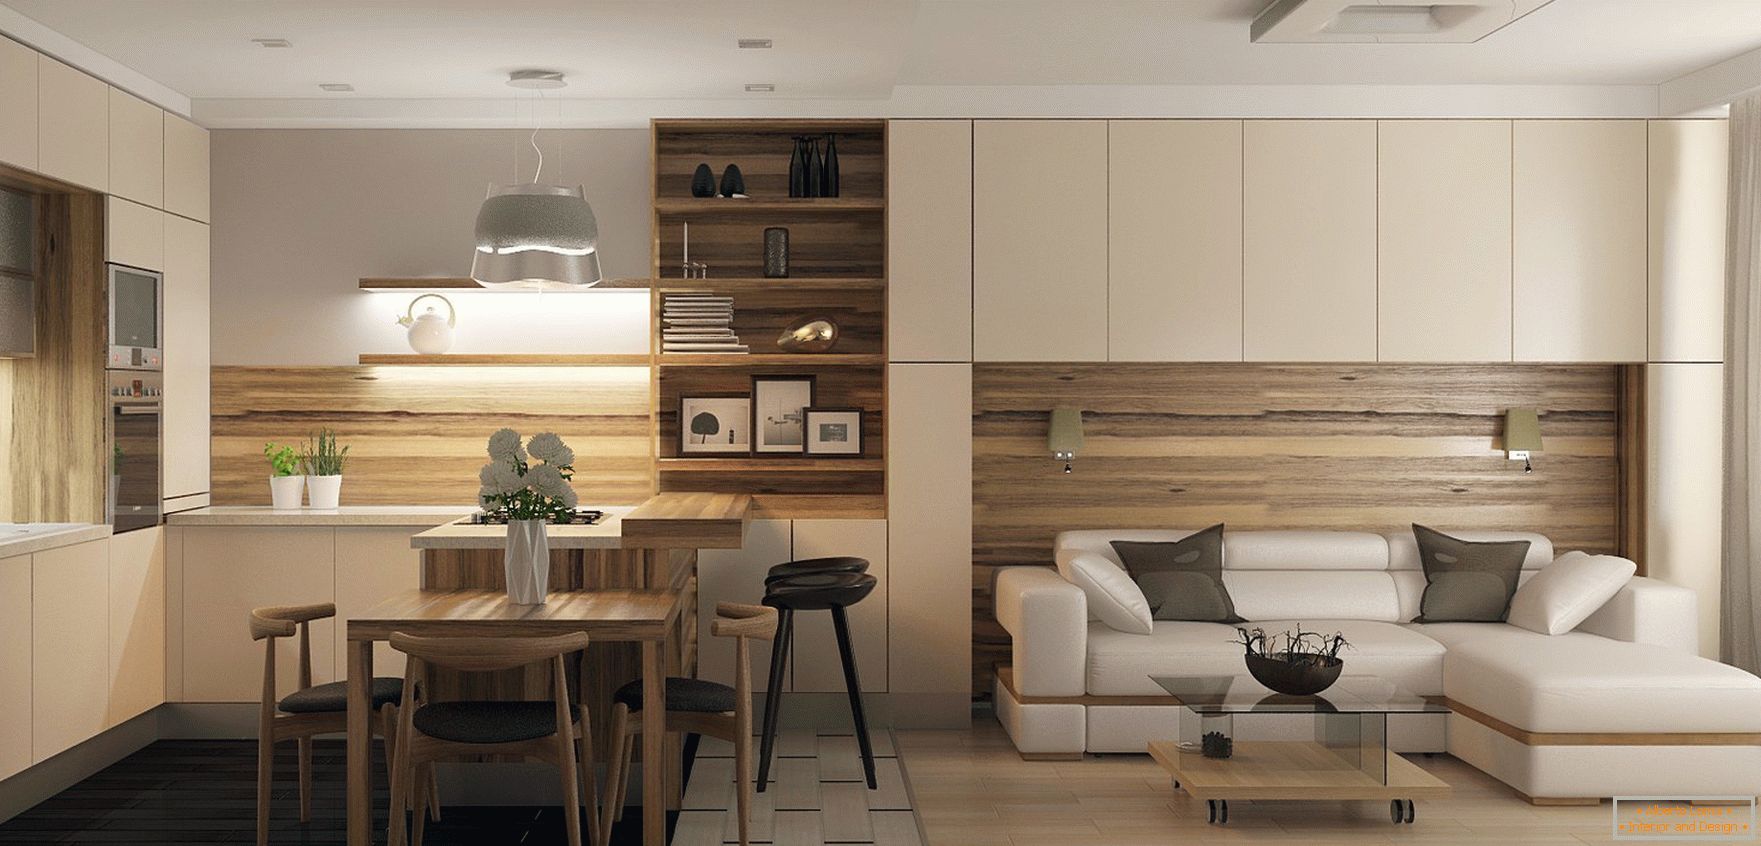 El diseño de la cocina-sala de estar